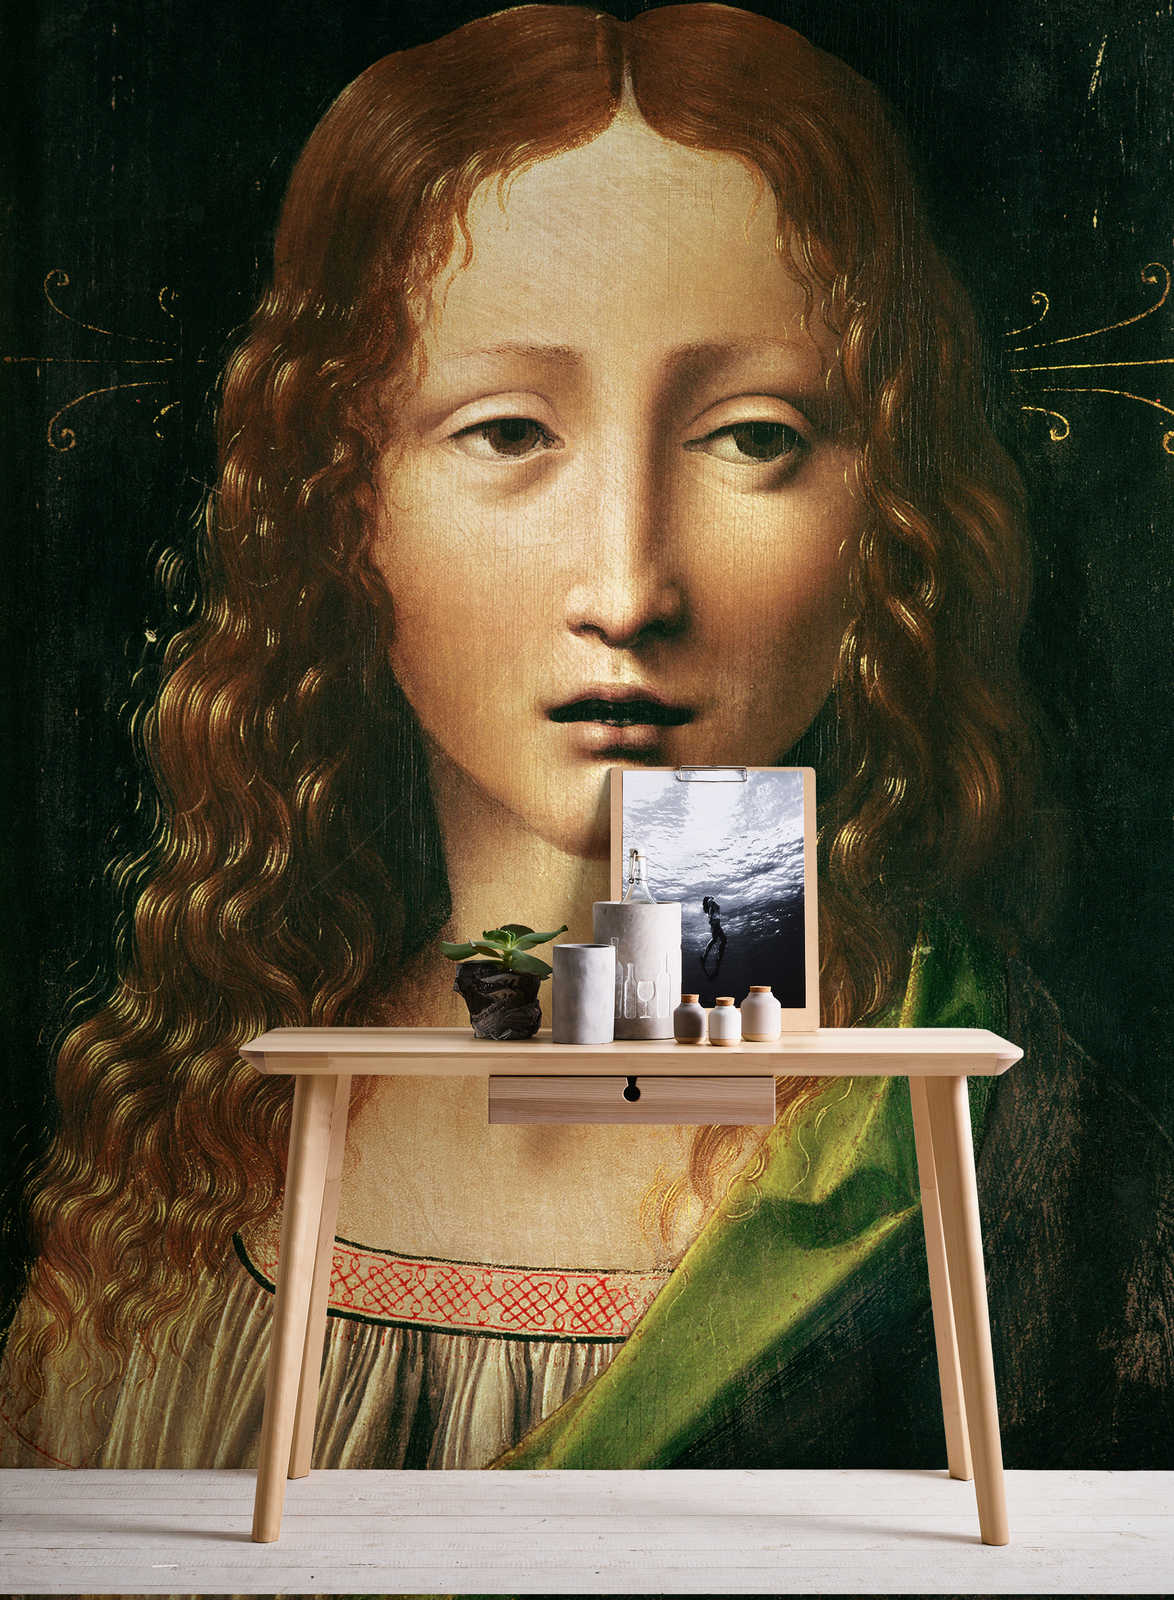             Testa del Salvatore" murale di Leonardo da Vinci
        